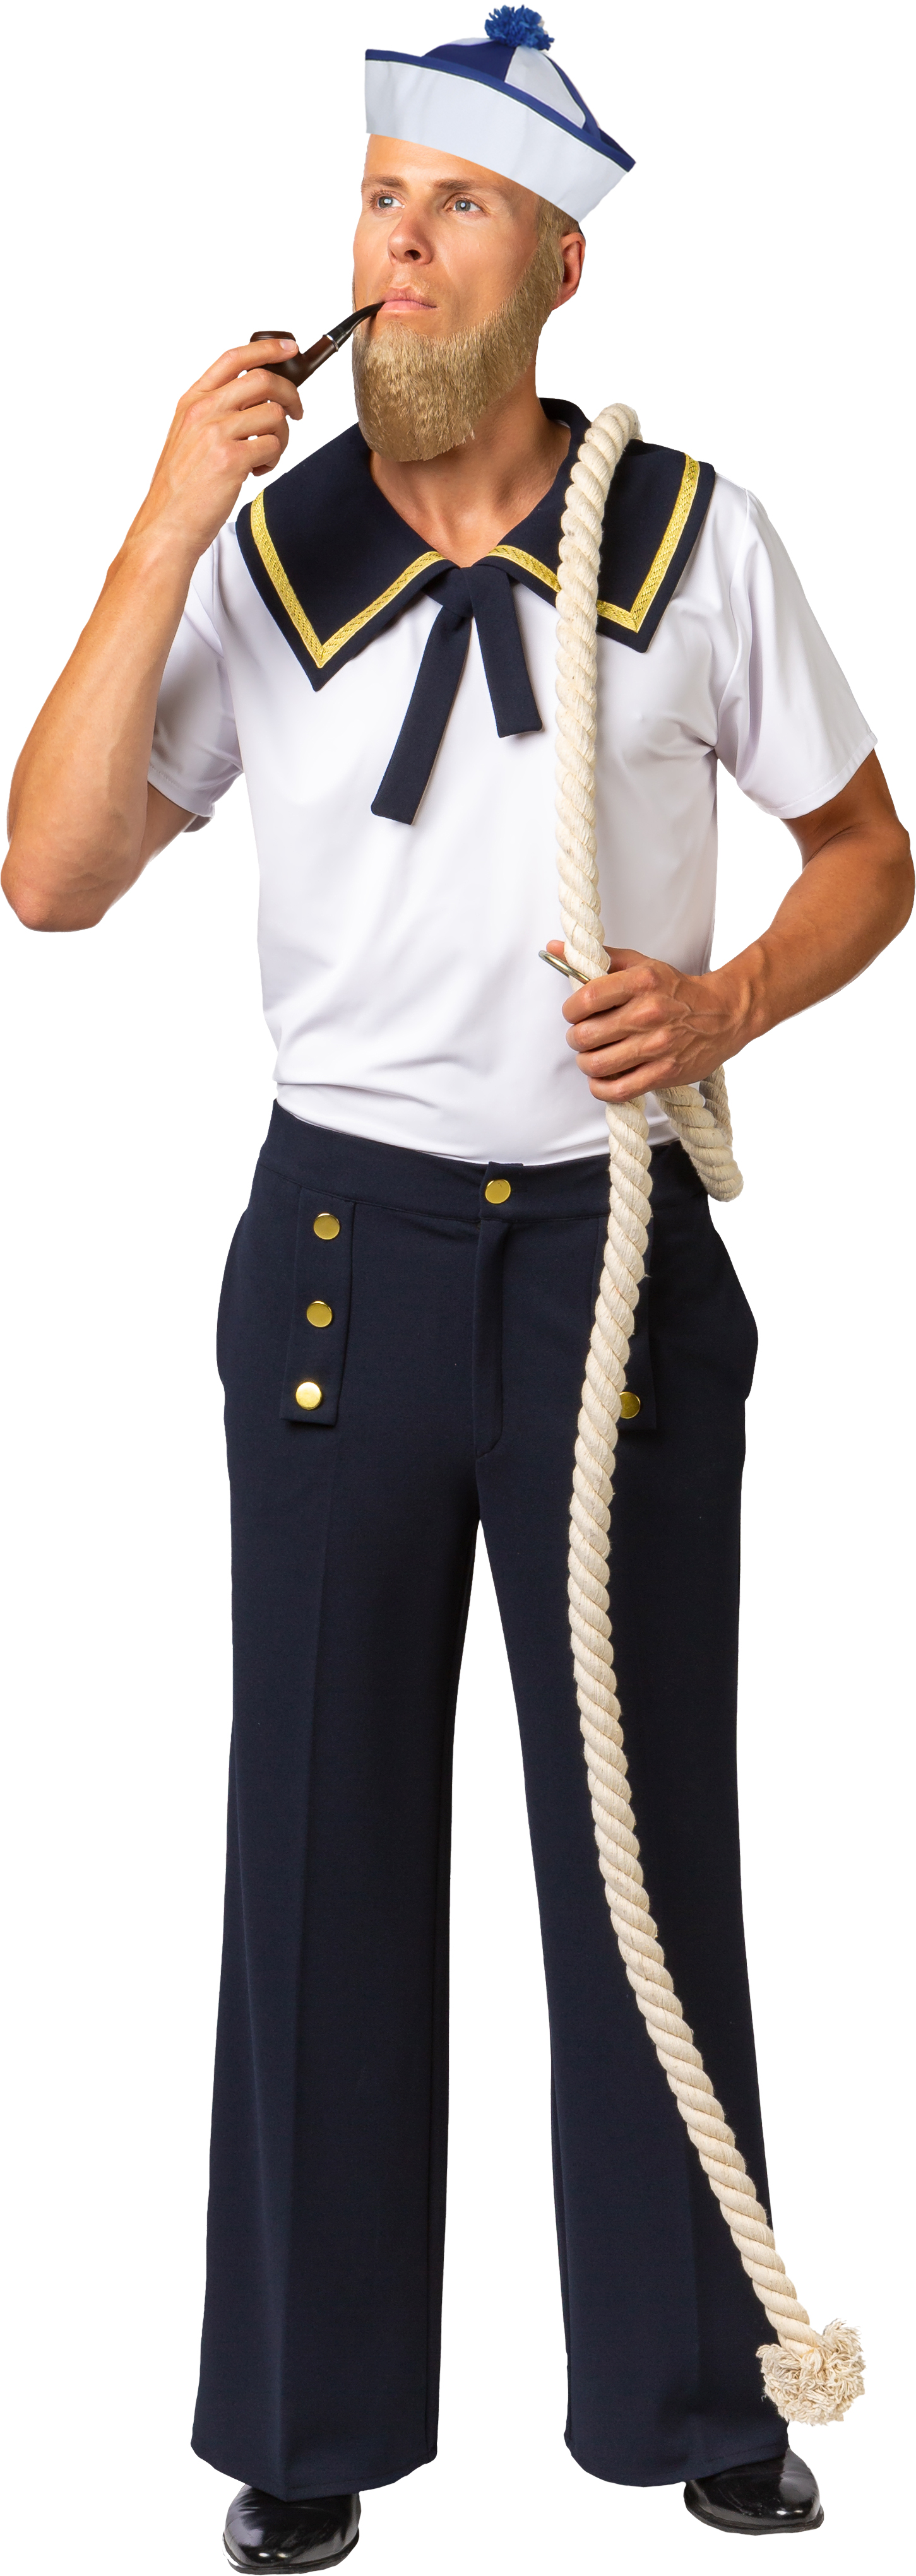 Flared trousers marine